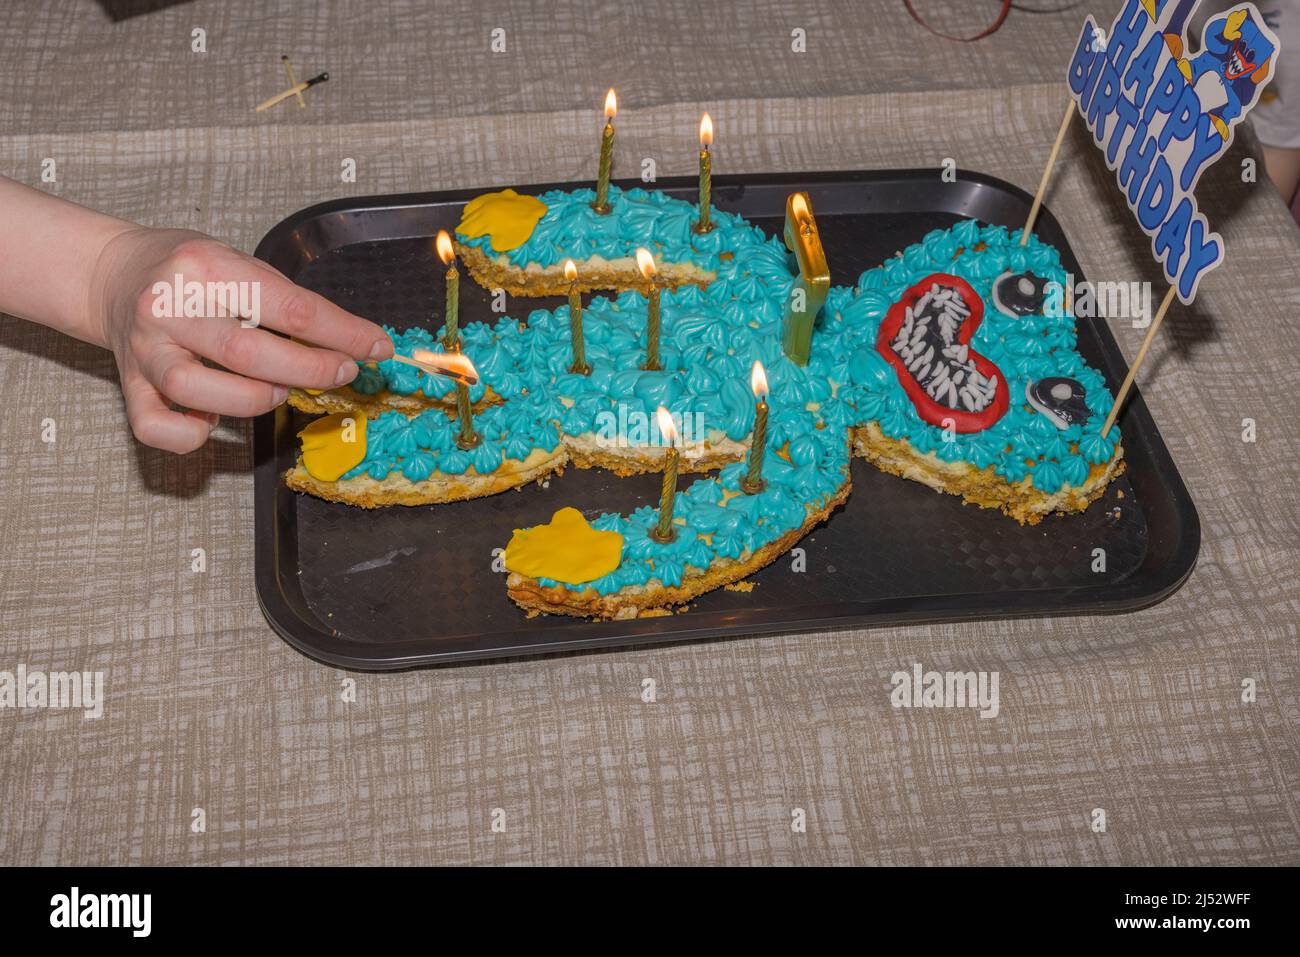 La mano del hombre enciende velas en un pastel para celebrar el cumpleaños del niño. SUECIA. Foto de stock